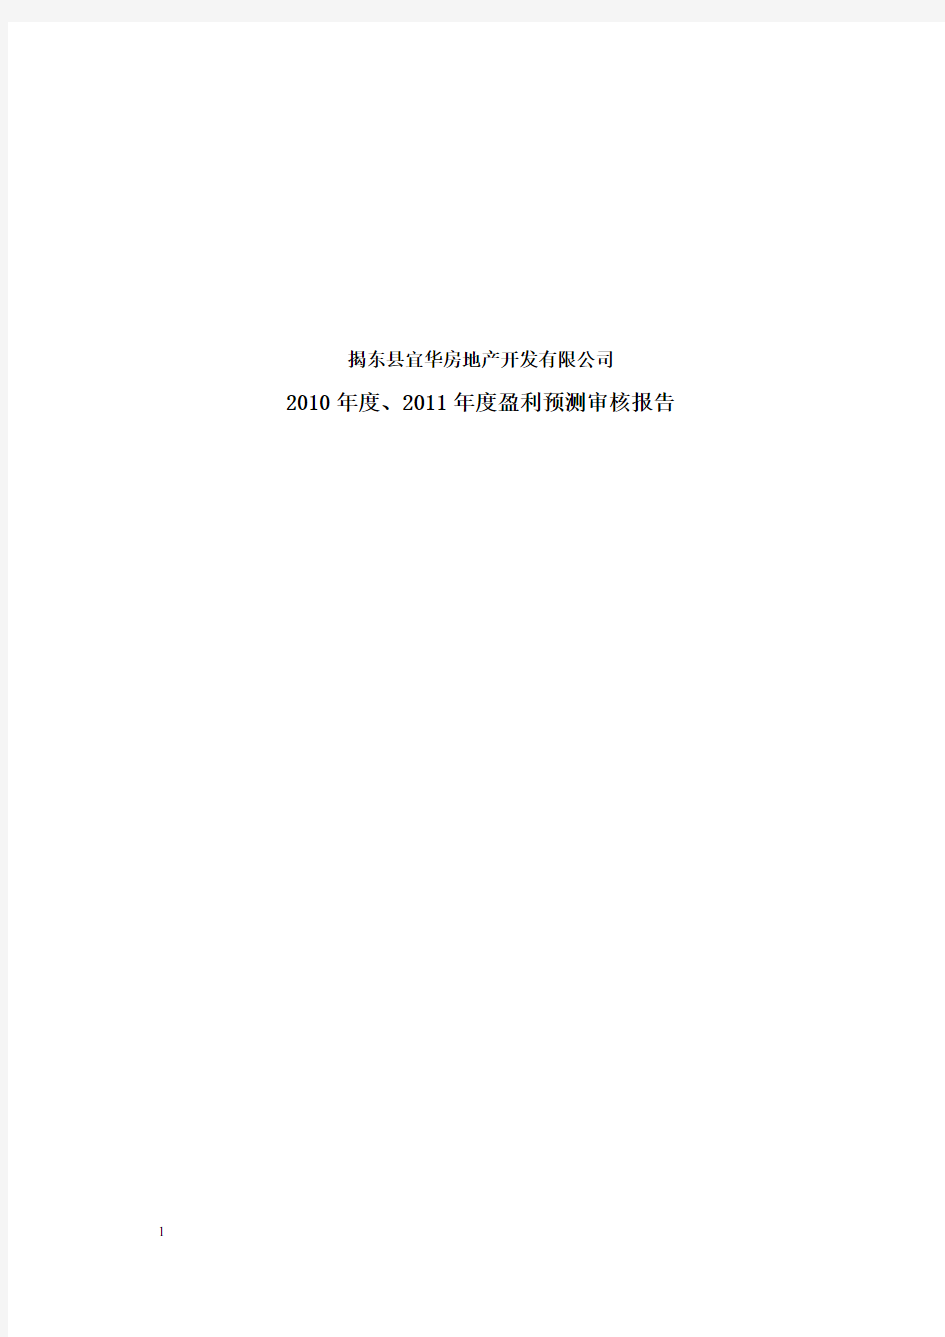 宜华地产：揭东县宜华房地产开发有限公司2010年度、2011年度盈利预测审核报告 2010-03-04